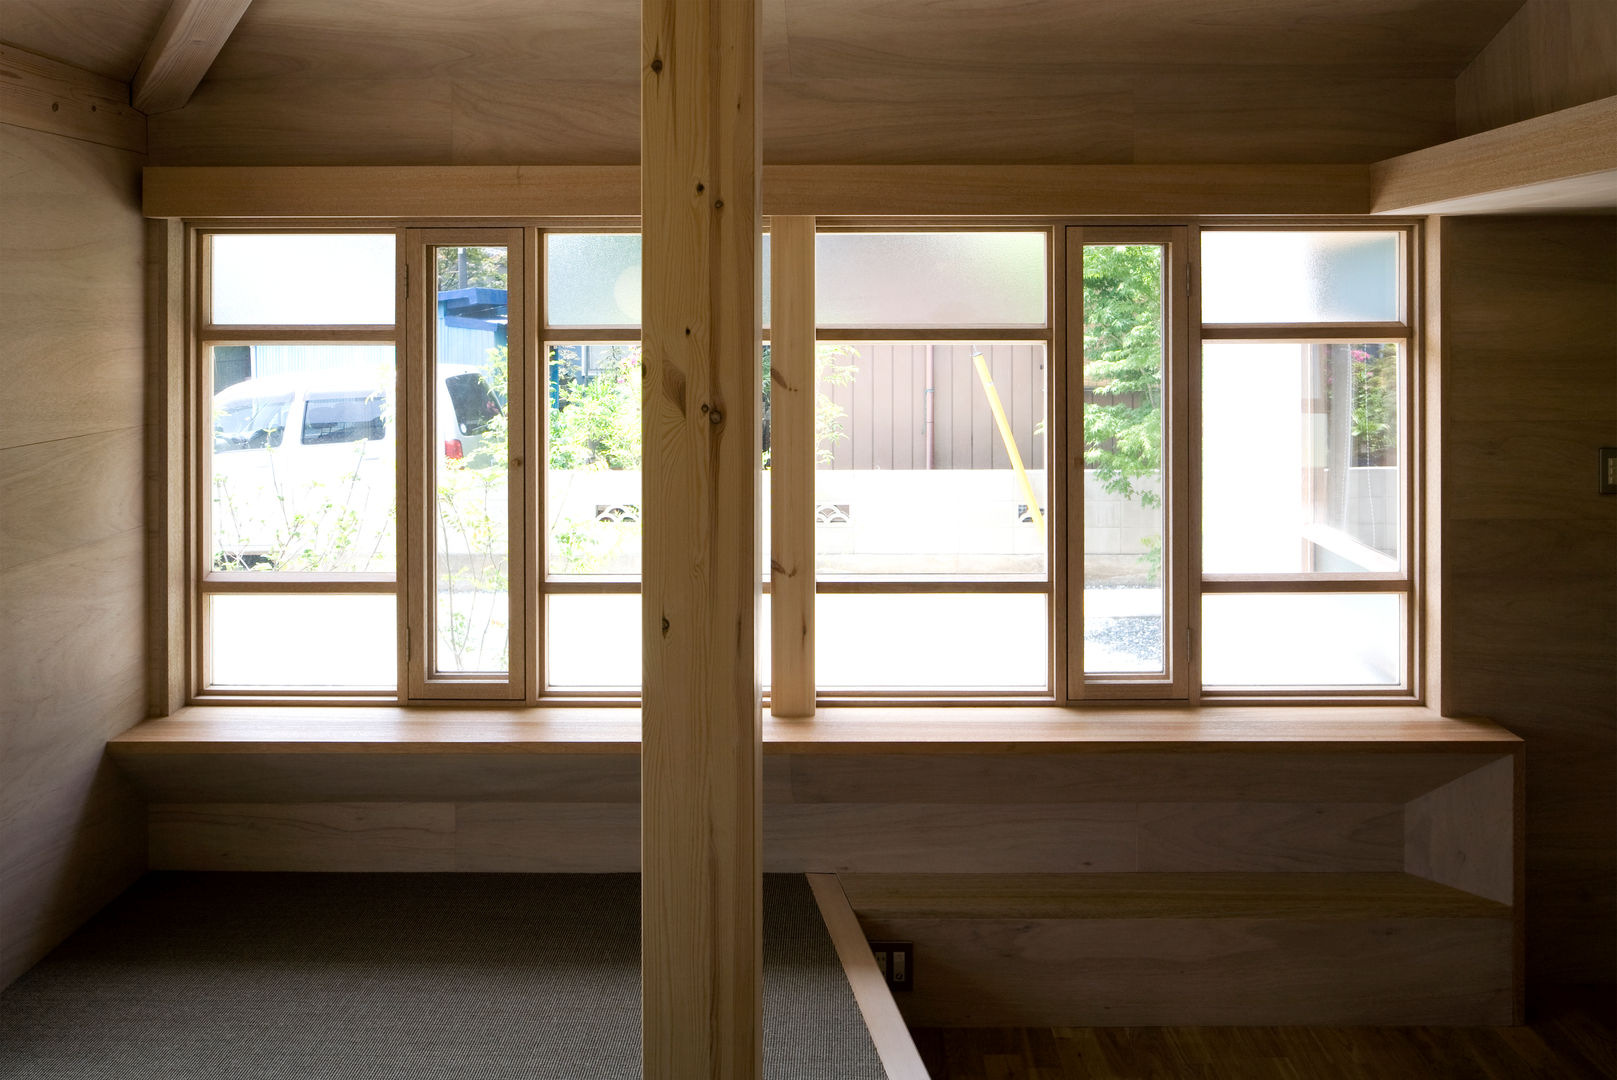 川越の住居/House in Kawagoe, 平山教博空間設計事務所 平山教博空間設計事務所 Windows